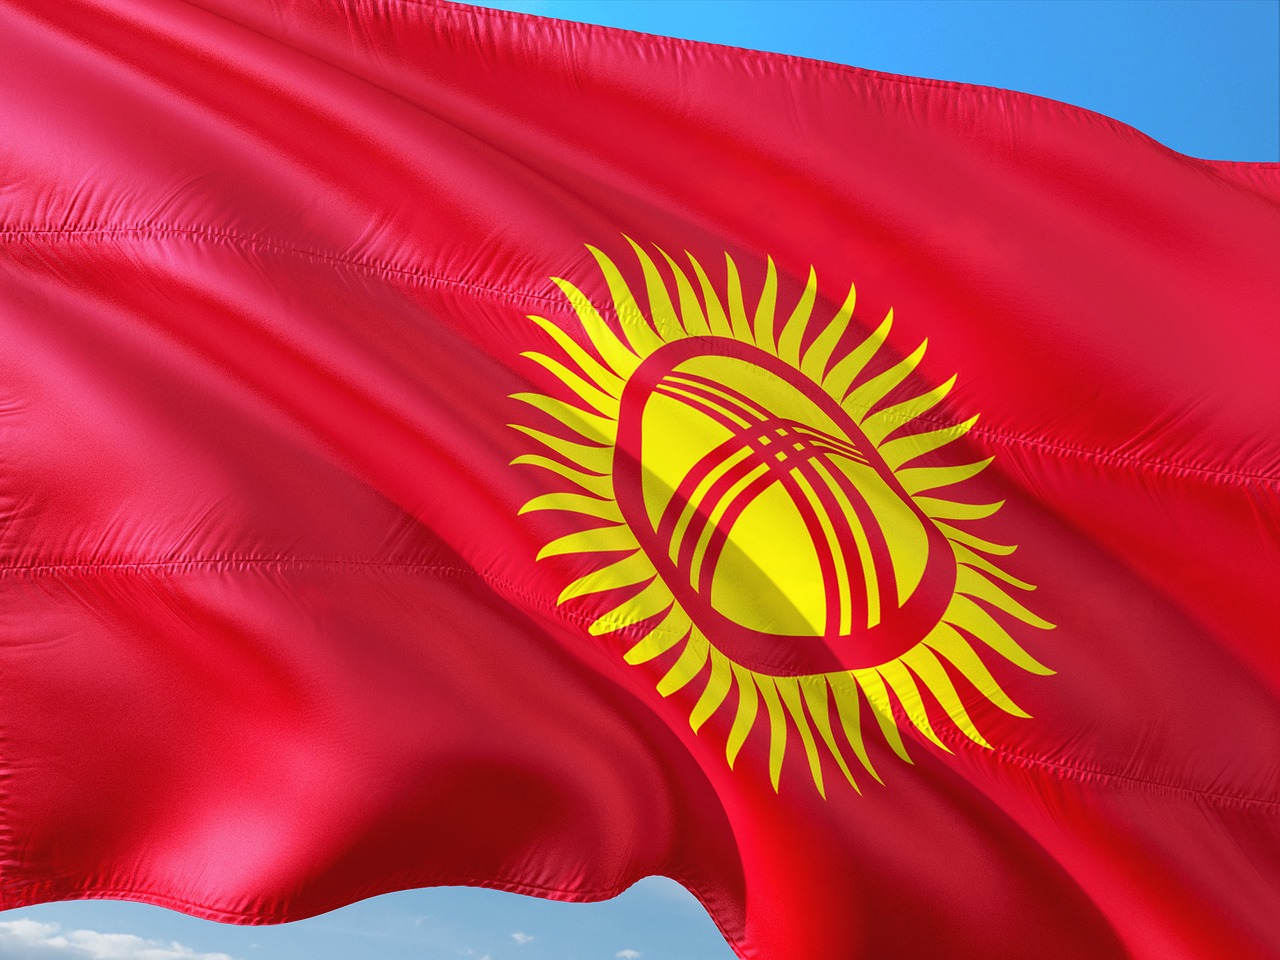 Pakistan summons Kyrgyzstan ambassador over attacks on students